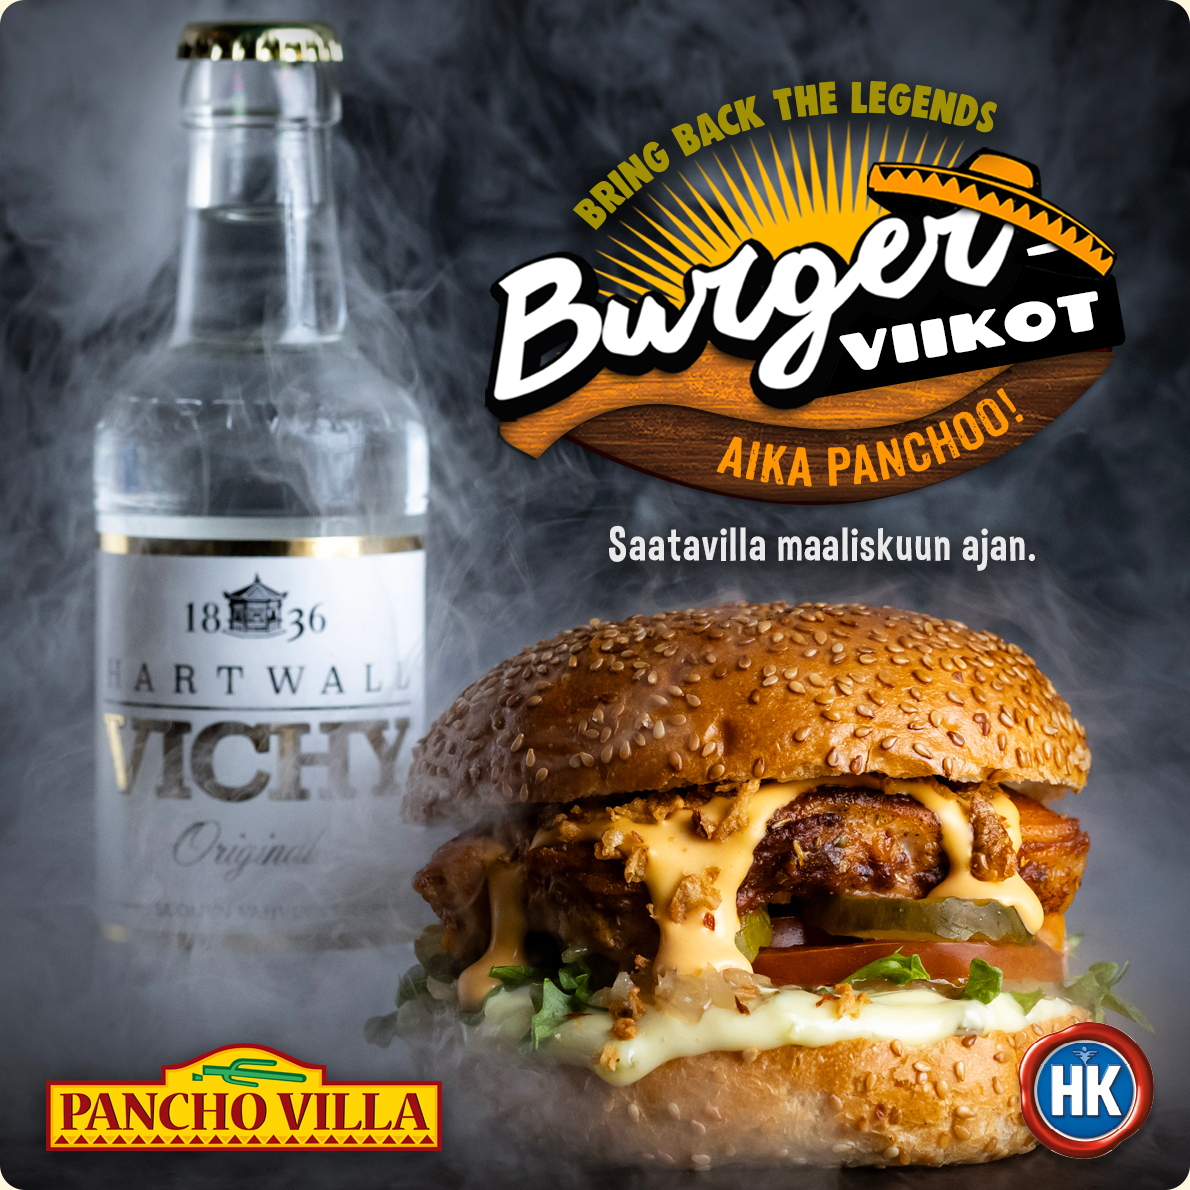 Burgerviikot - Bring back the legends